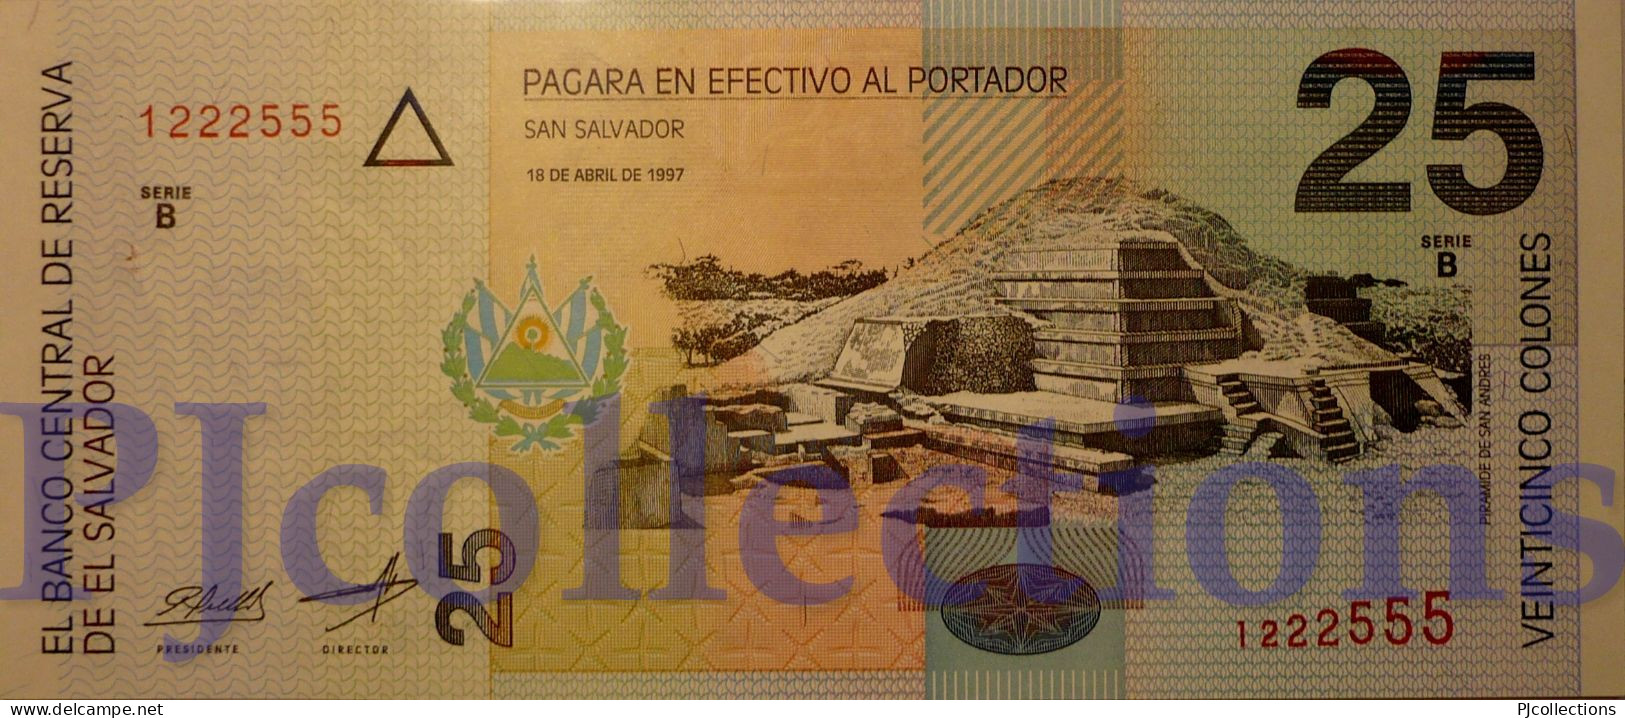 EL SALVADOR 25 COLONES 1997 PICK 149a UNC GOOD SERIAL NUMBER "1222555" - El Salvador